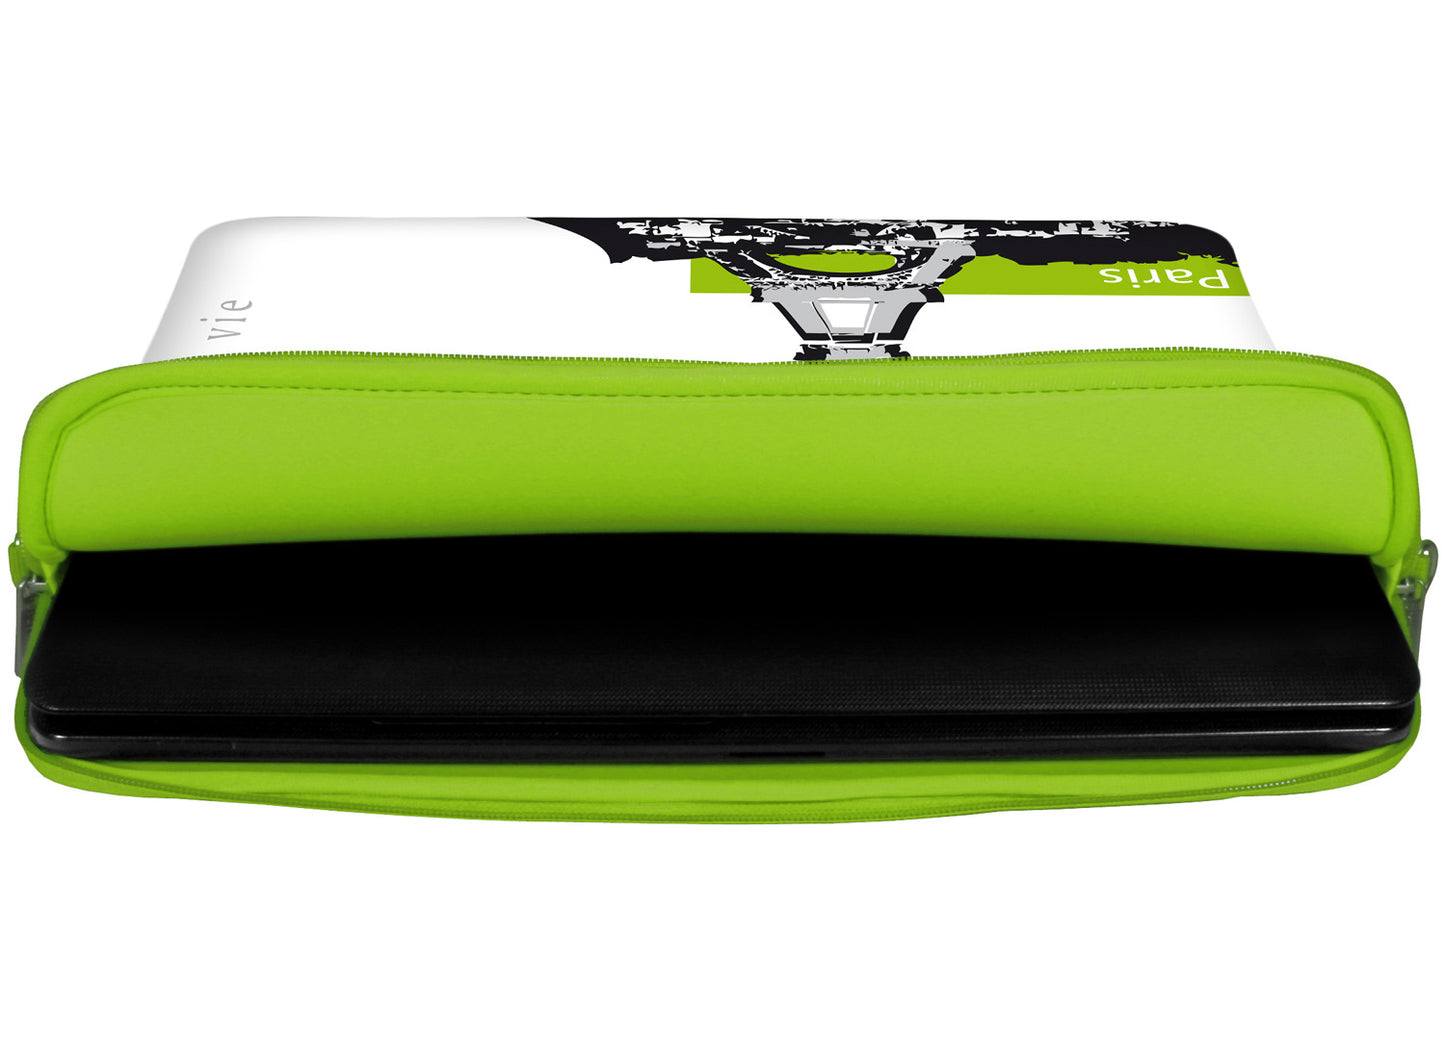 Innenansicht mit Schutzlippen der LS136 Paris Designer Tasche für Laptop in grün aus wasserabweisendem Neopren